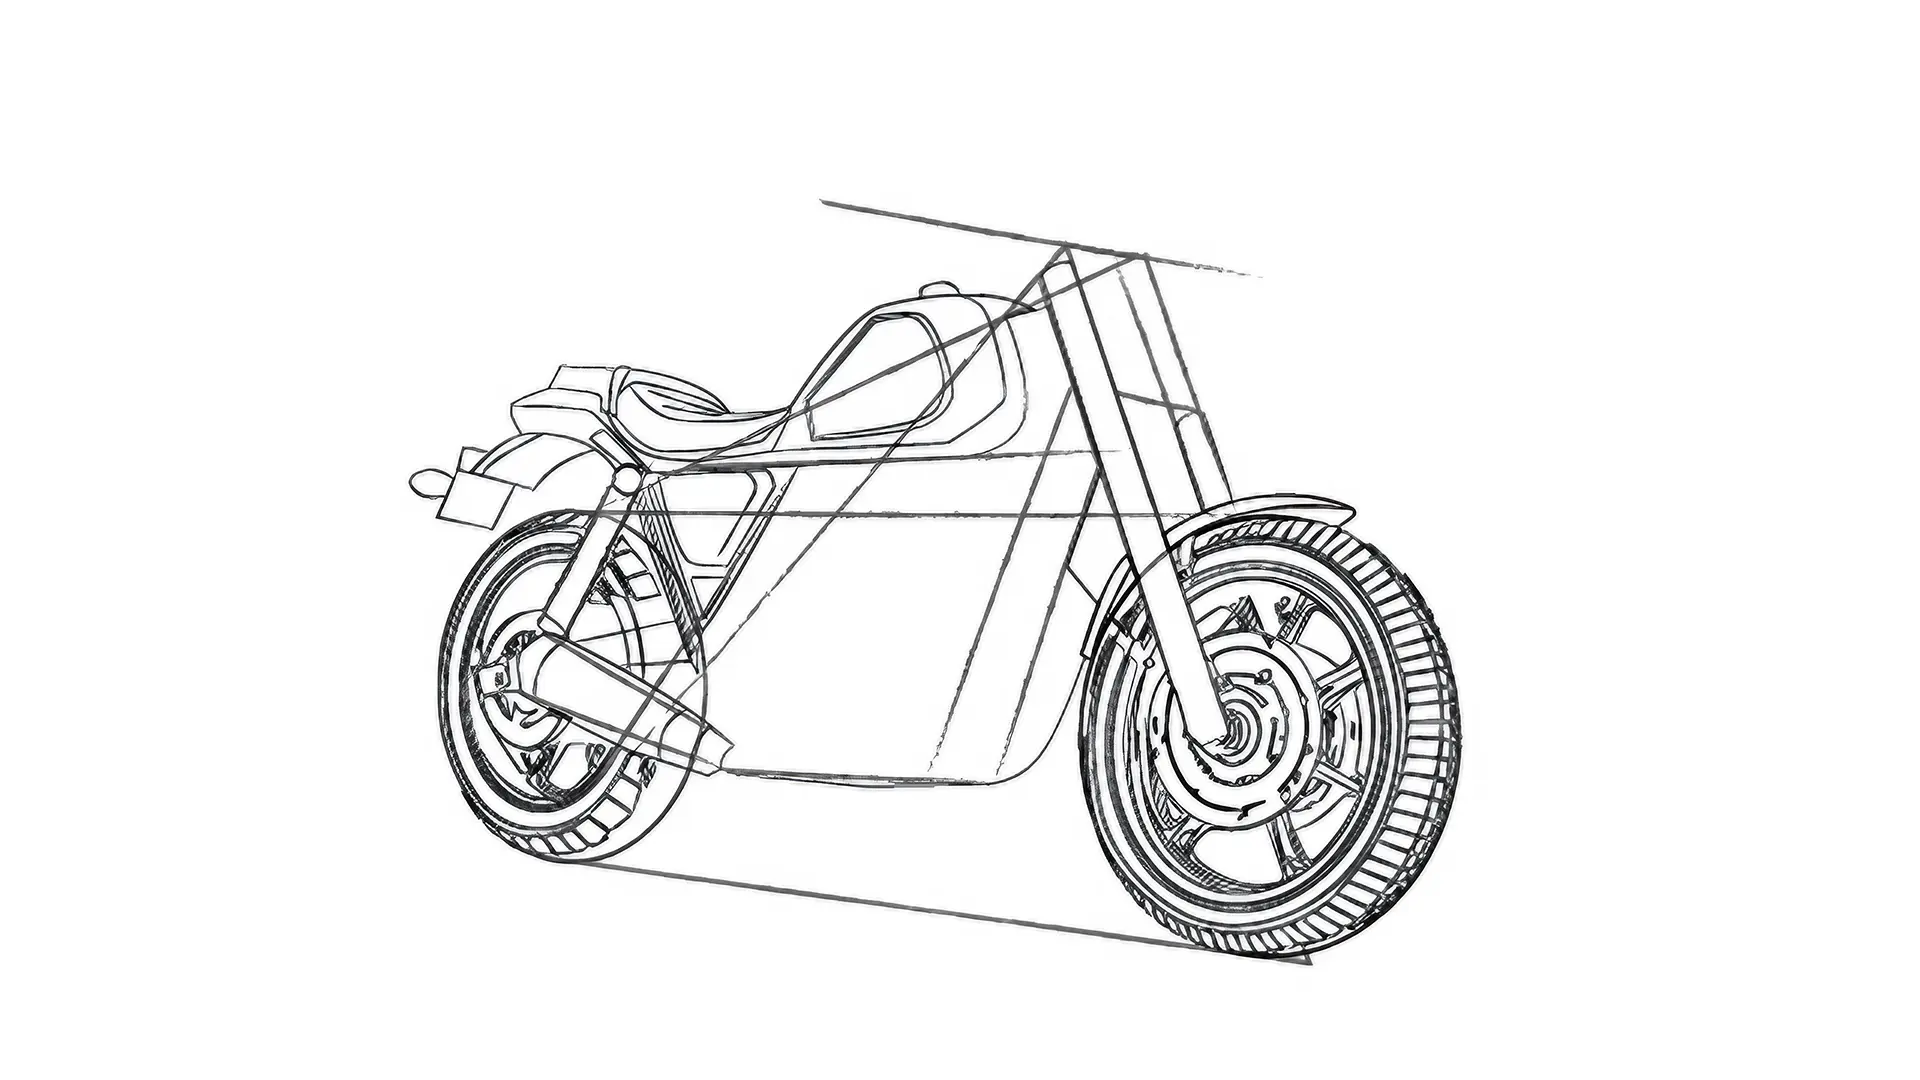 dessin du cadre d’une moto